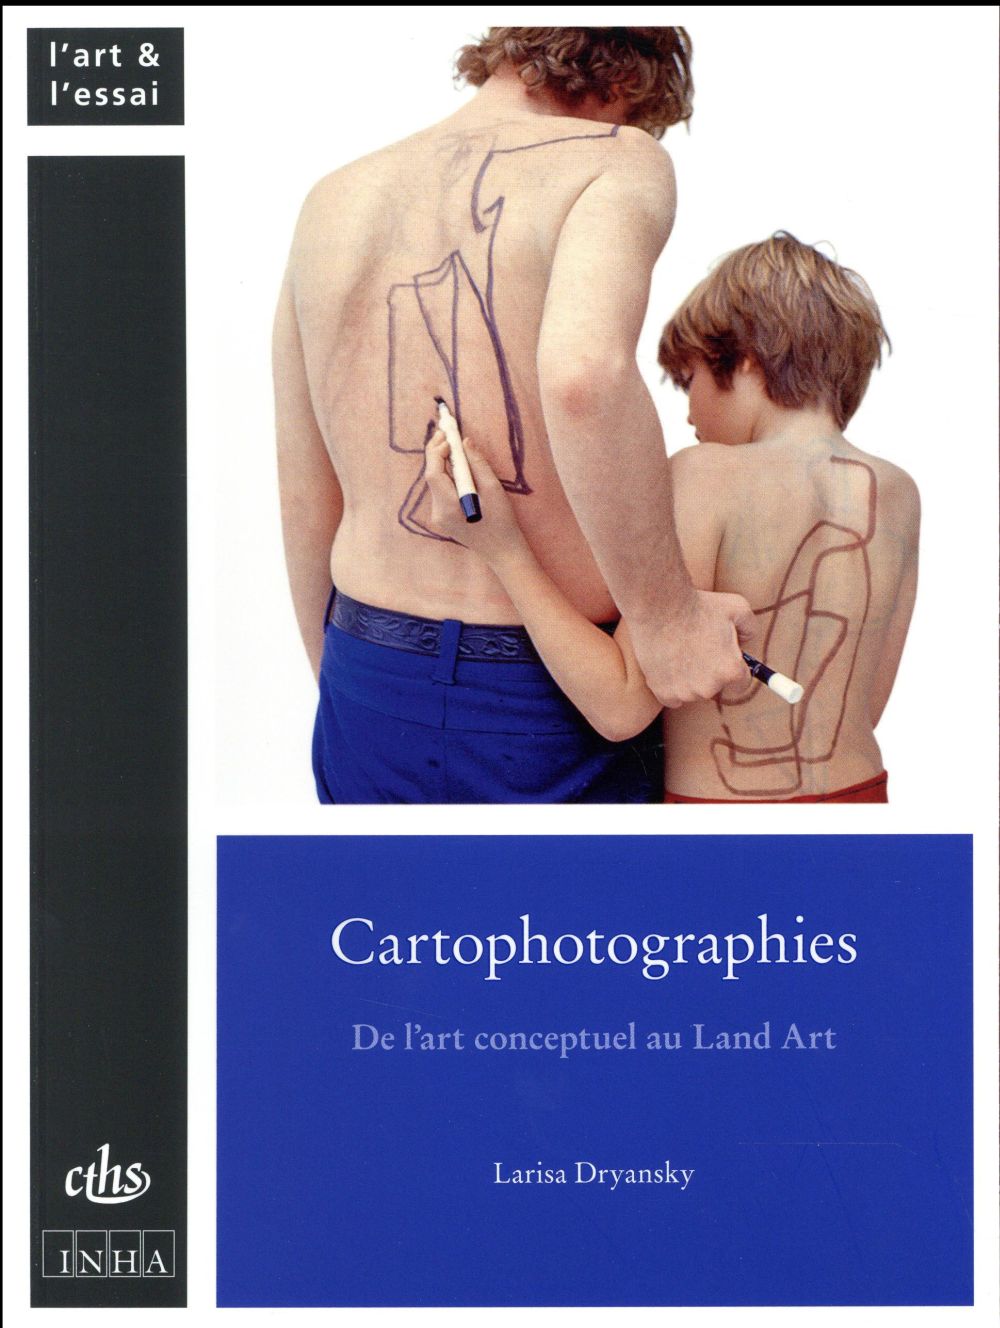 CARTOPHOTOGRAPHIES - DE L'ART CONCEPTUEL AU LAN ART